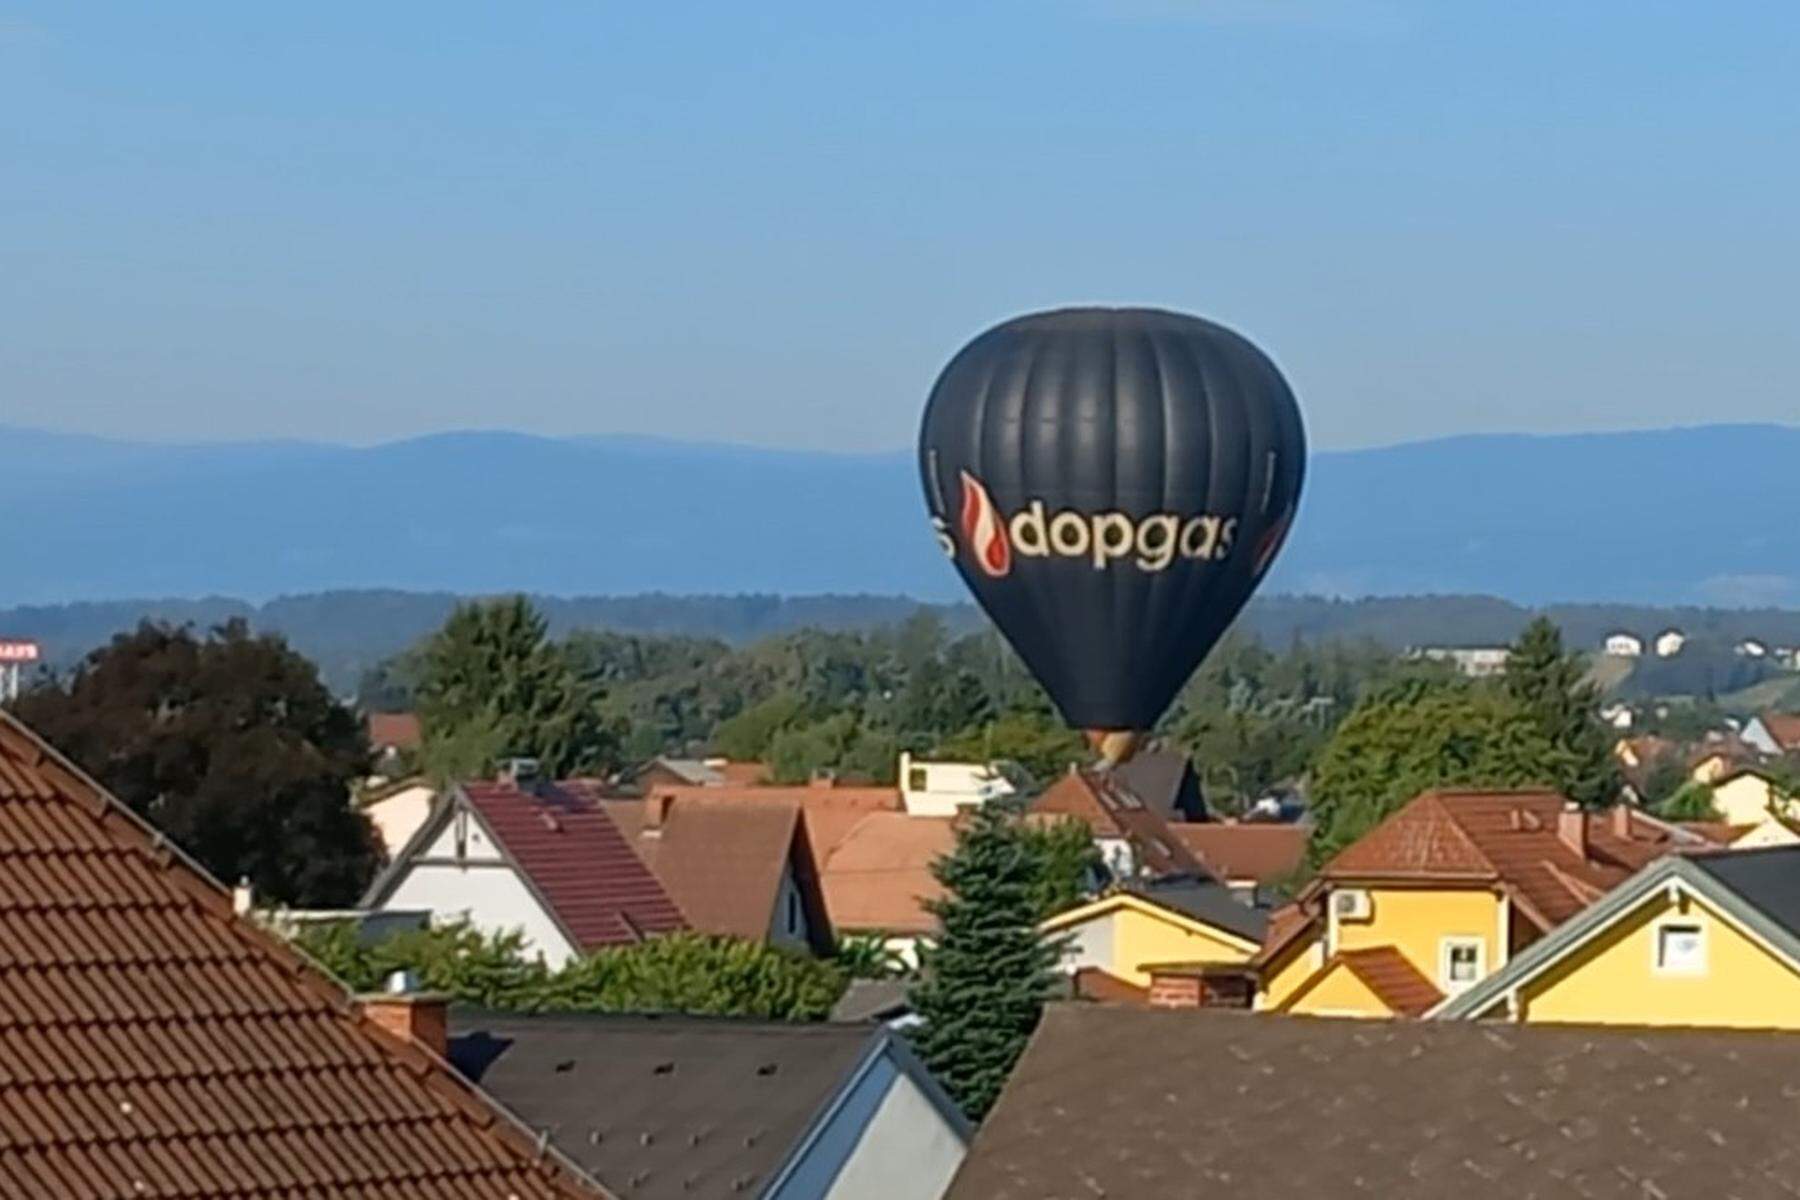 Aufsehenerregende Landung: Heißluftballon landete mitten im Seiersberger Wohngebiet